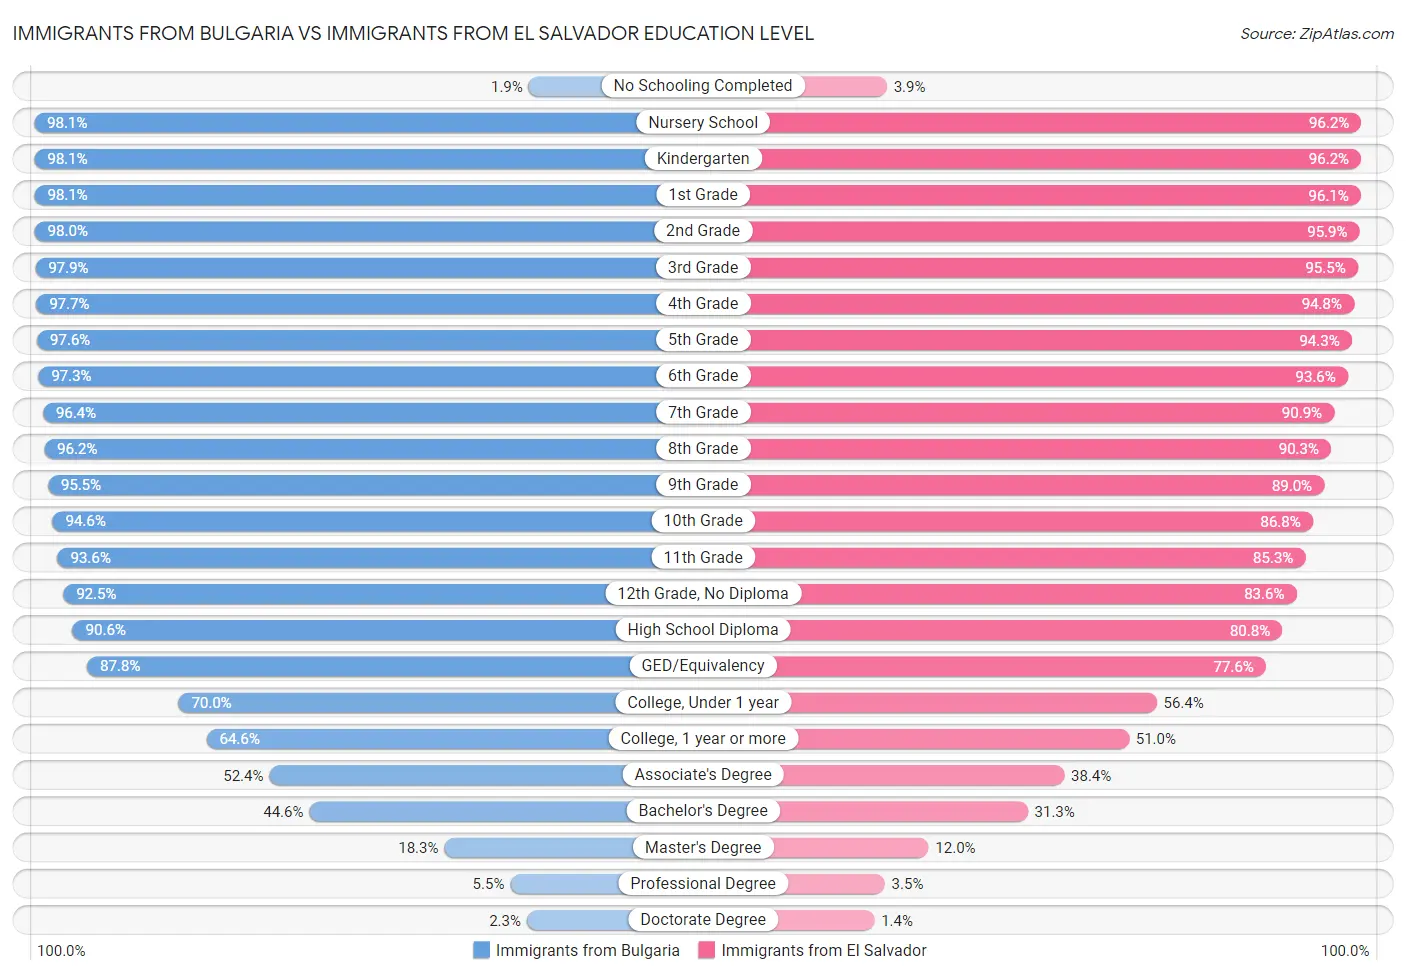 Immigrants from Bulgaria vs Immigrants from El Salvador Education Level